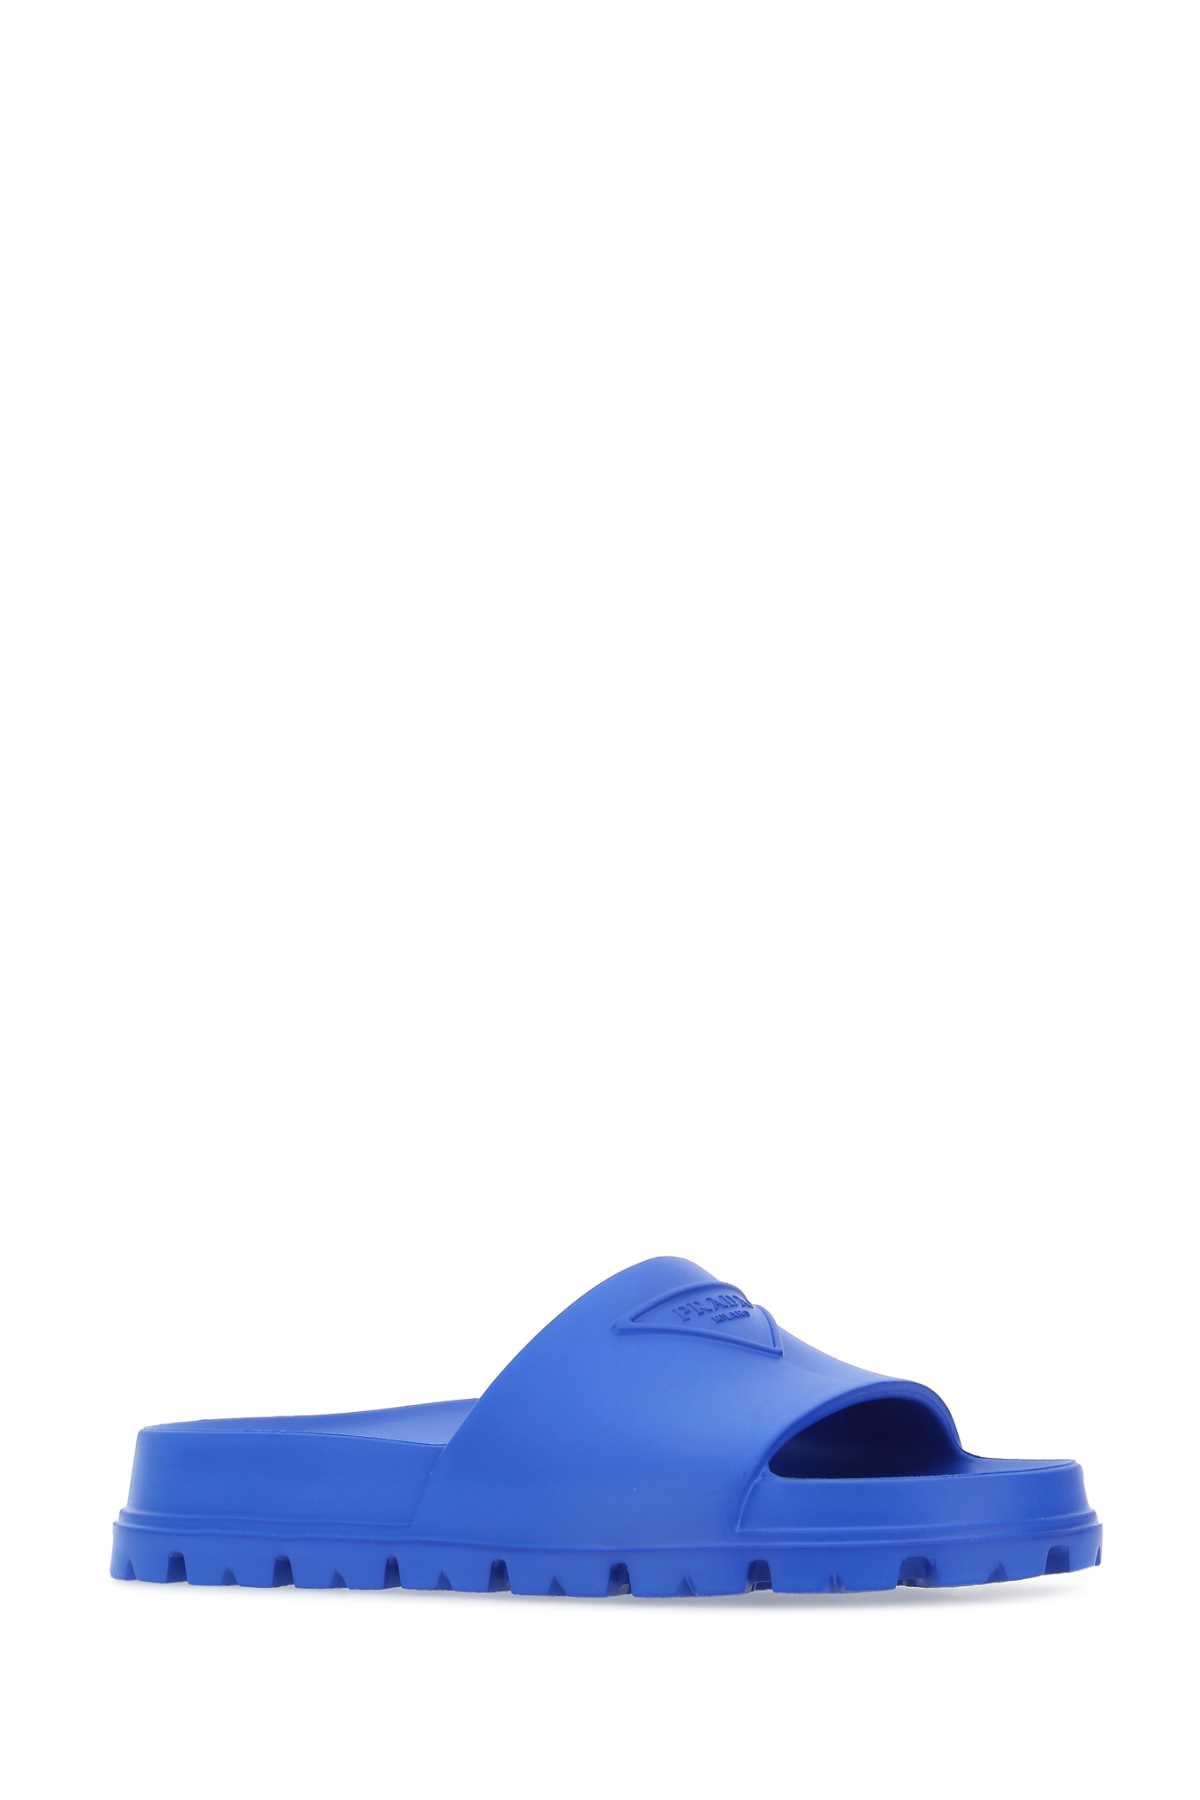 Prada Blue Rubber Slippers In F0013